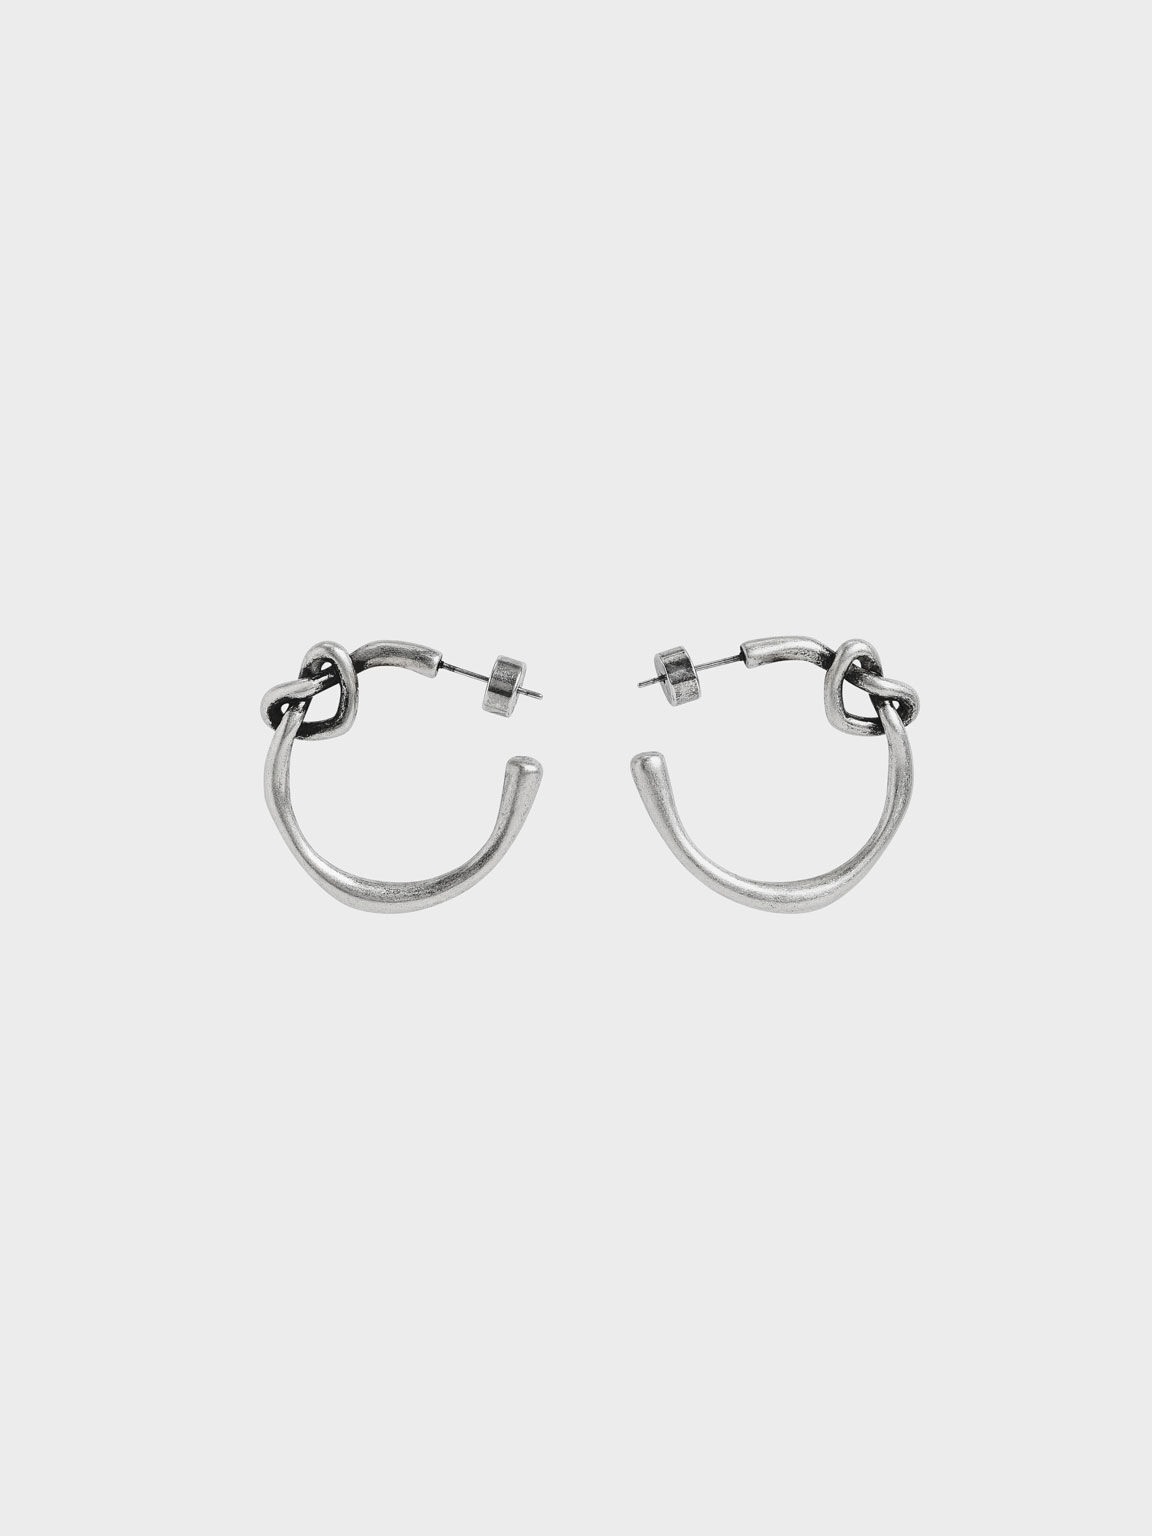 施華洛世奇® 水晶心型耳環, 銀色, hi-res